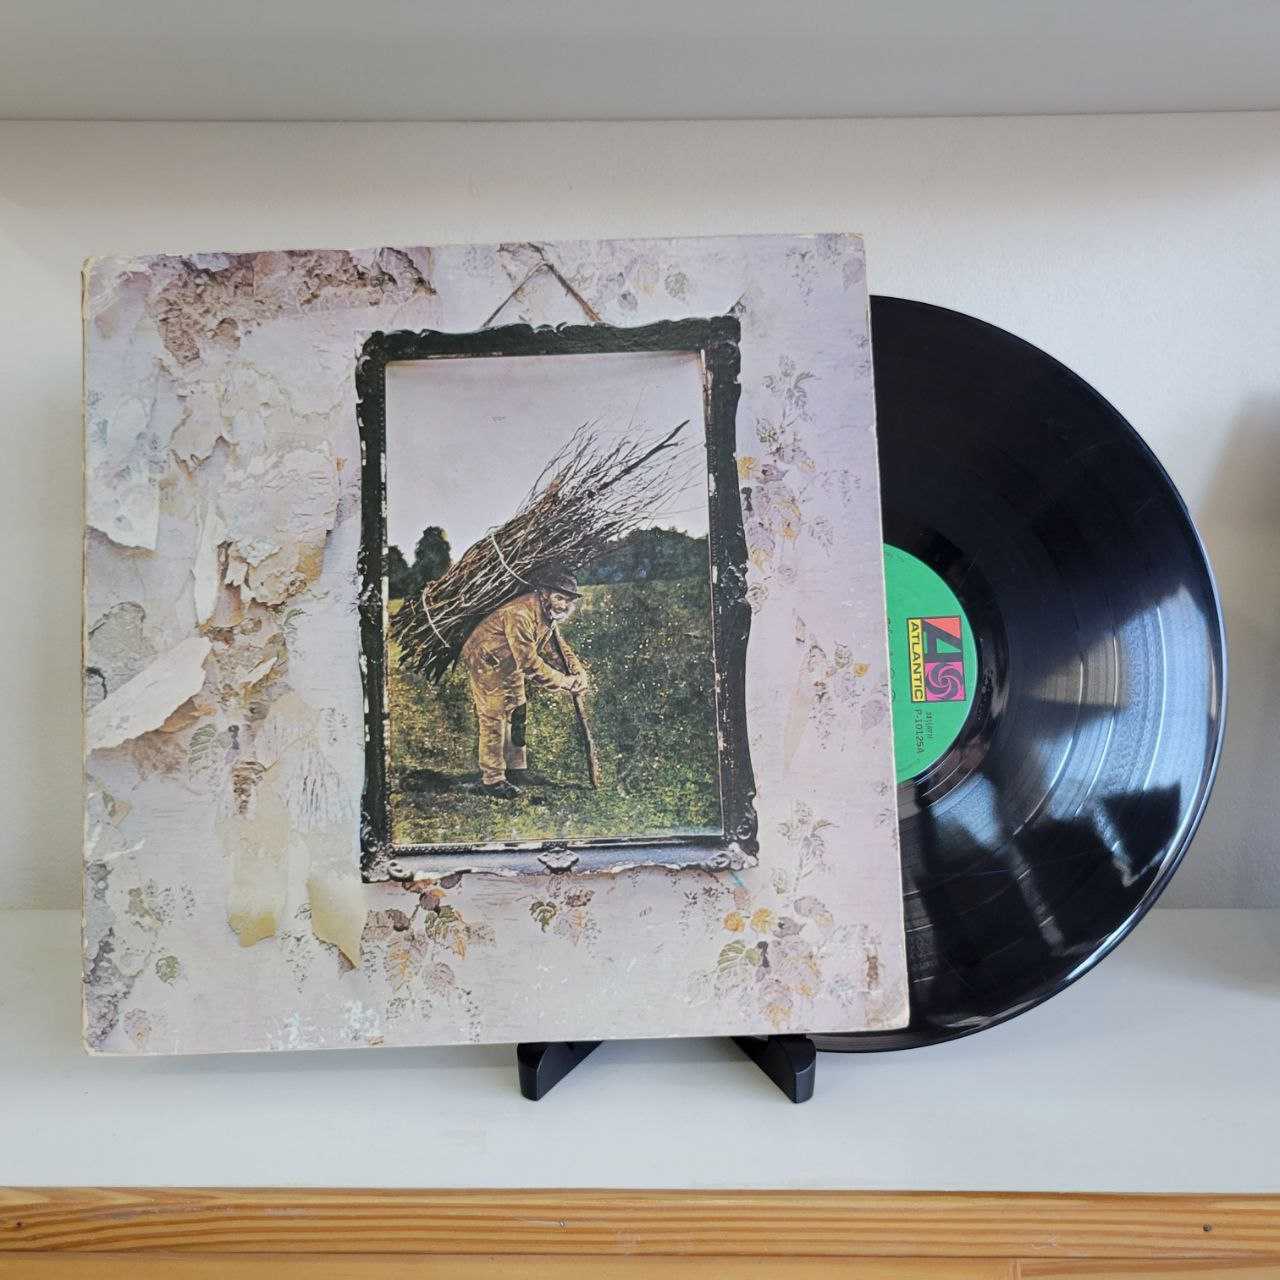 Led Zeppelin - Últimos CD, discos, vinilos